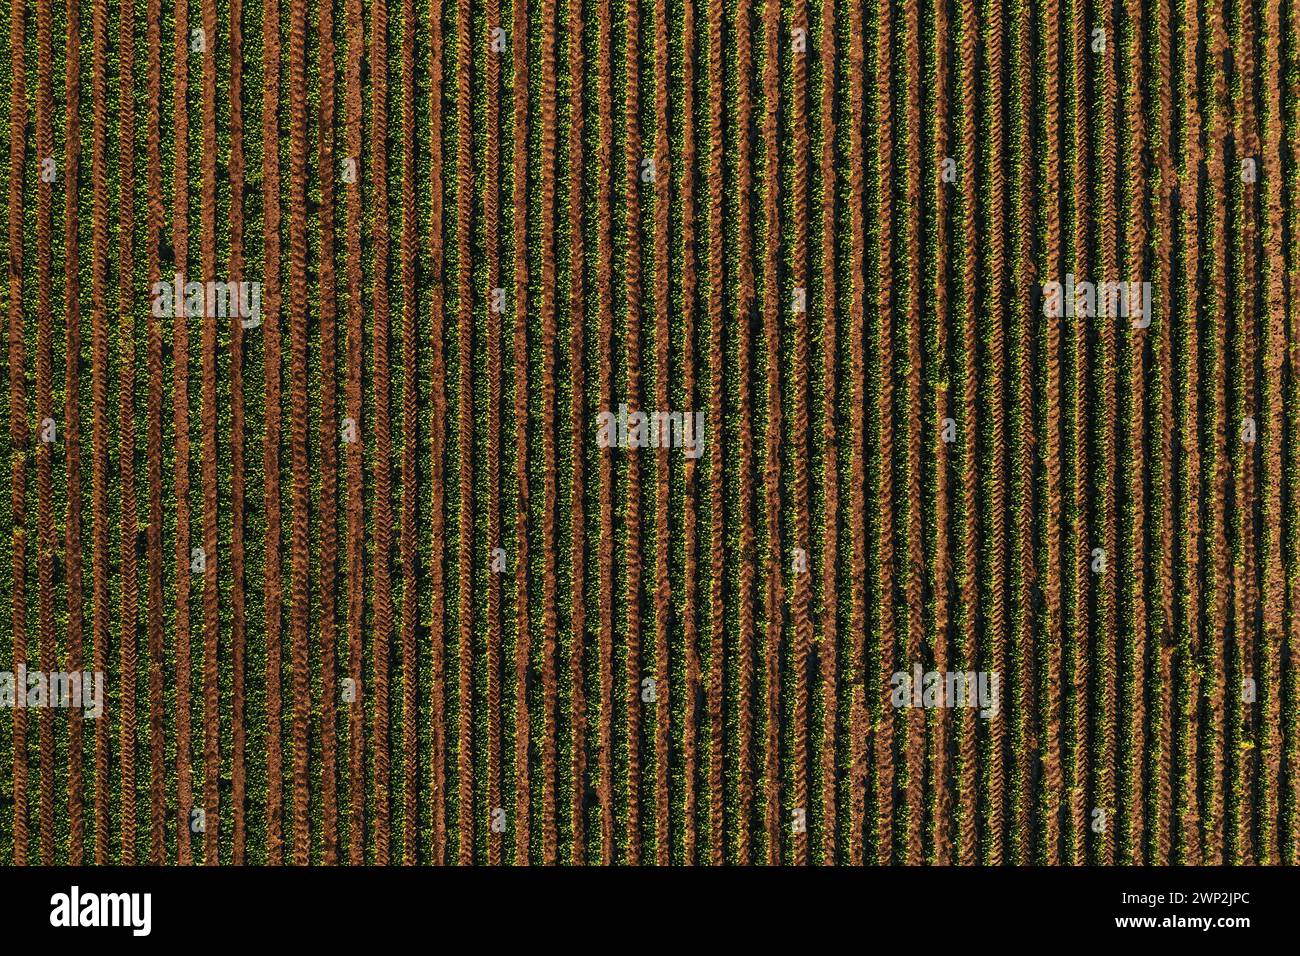 File di colture di soia nei campi che formano un motivo a strisce, shot aereo dal drone pov direttamente sopra Foto Stock